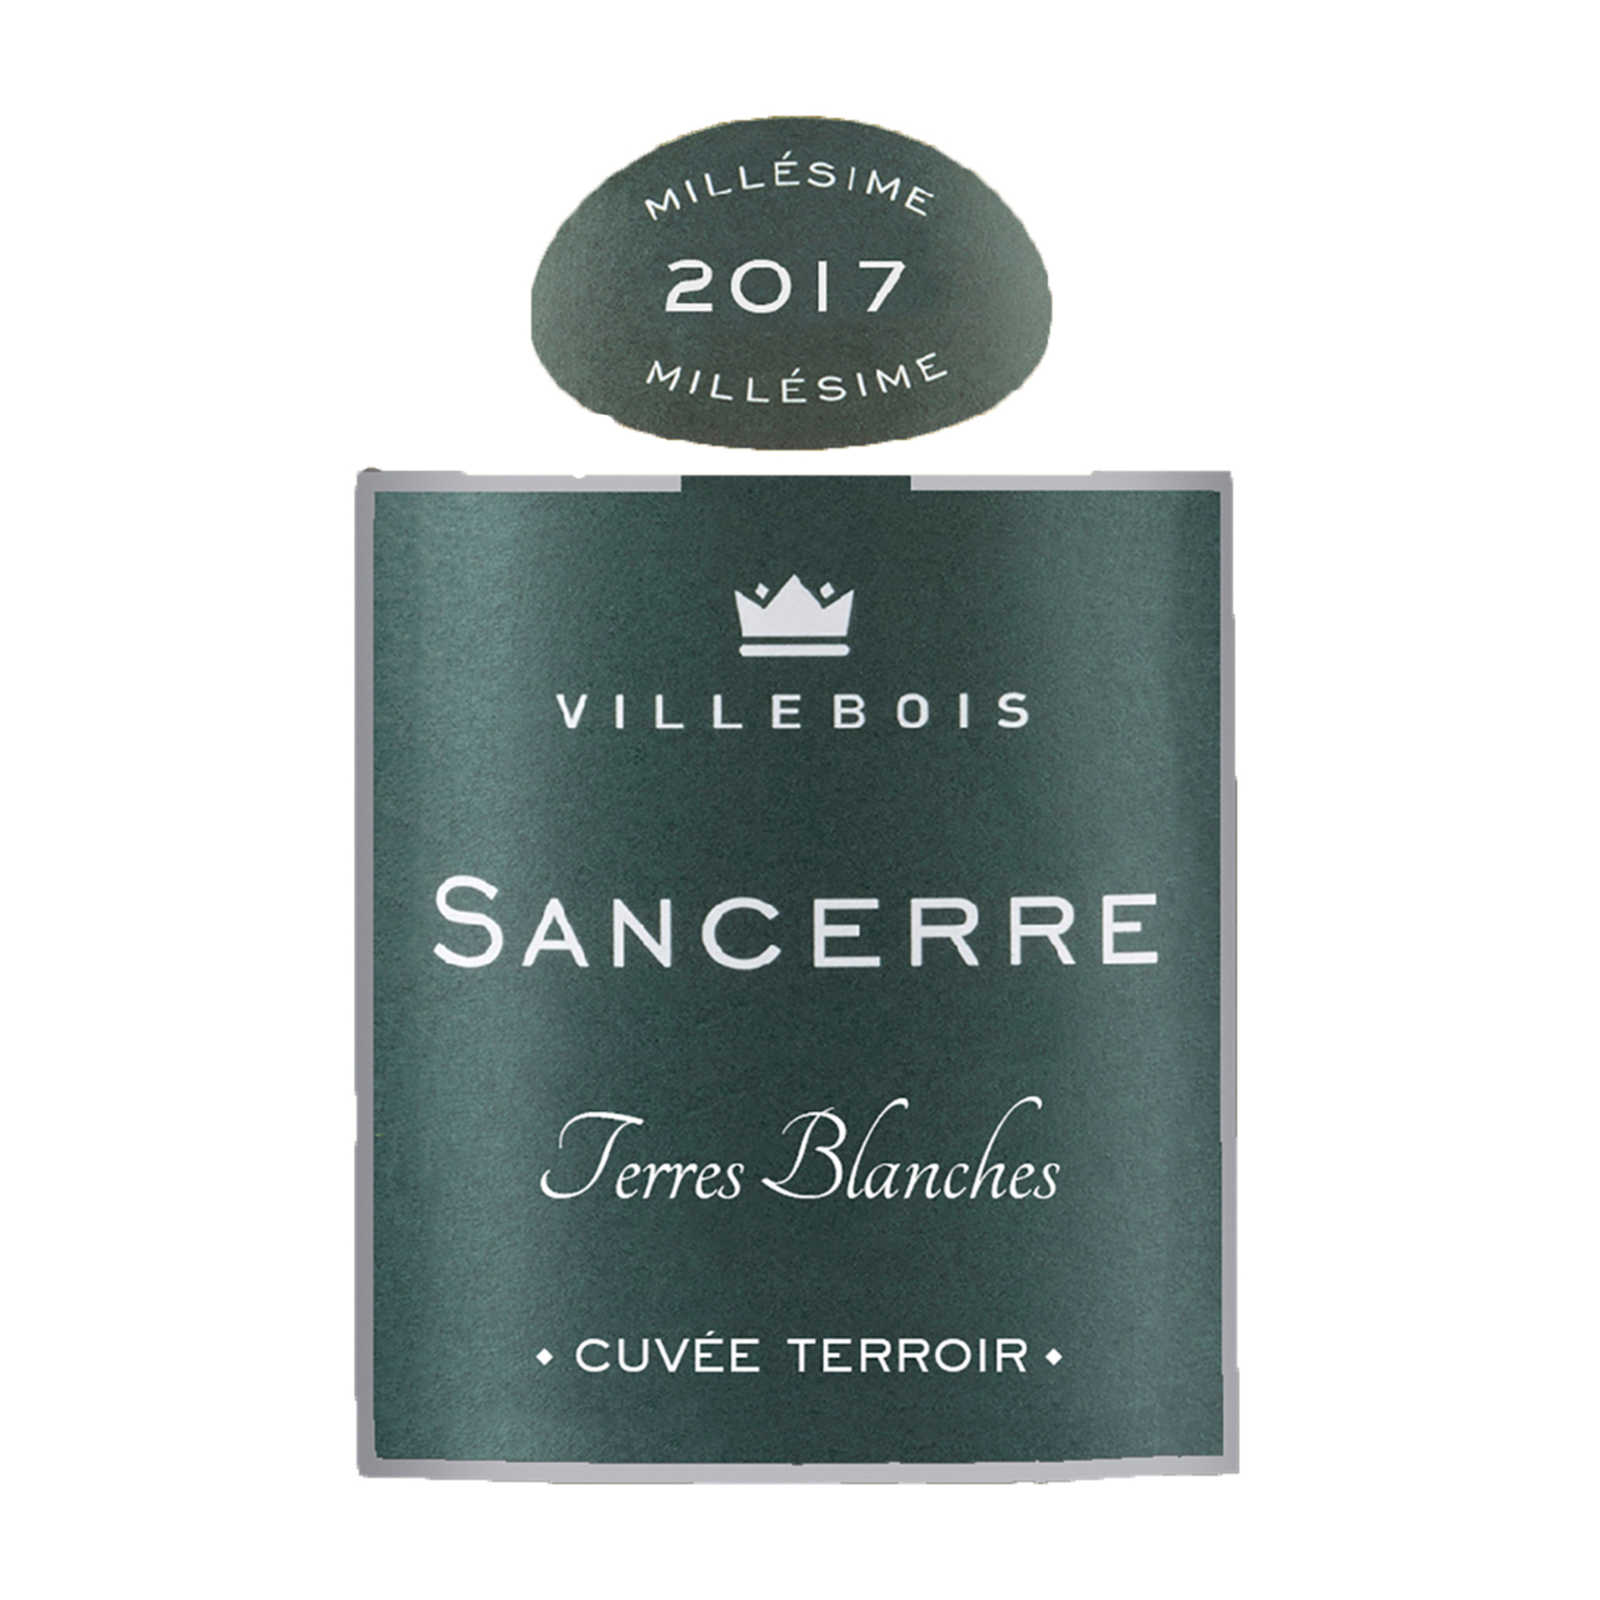 FR LOIRE SANCERRE-Loire - Sancerre